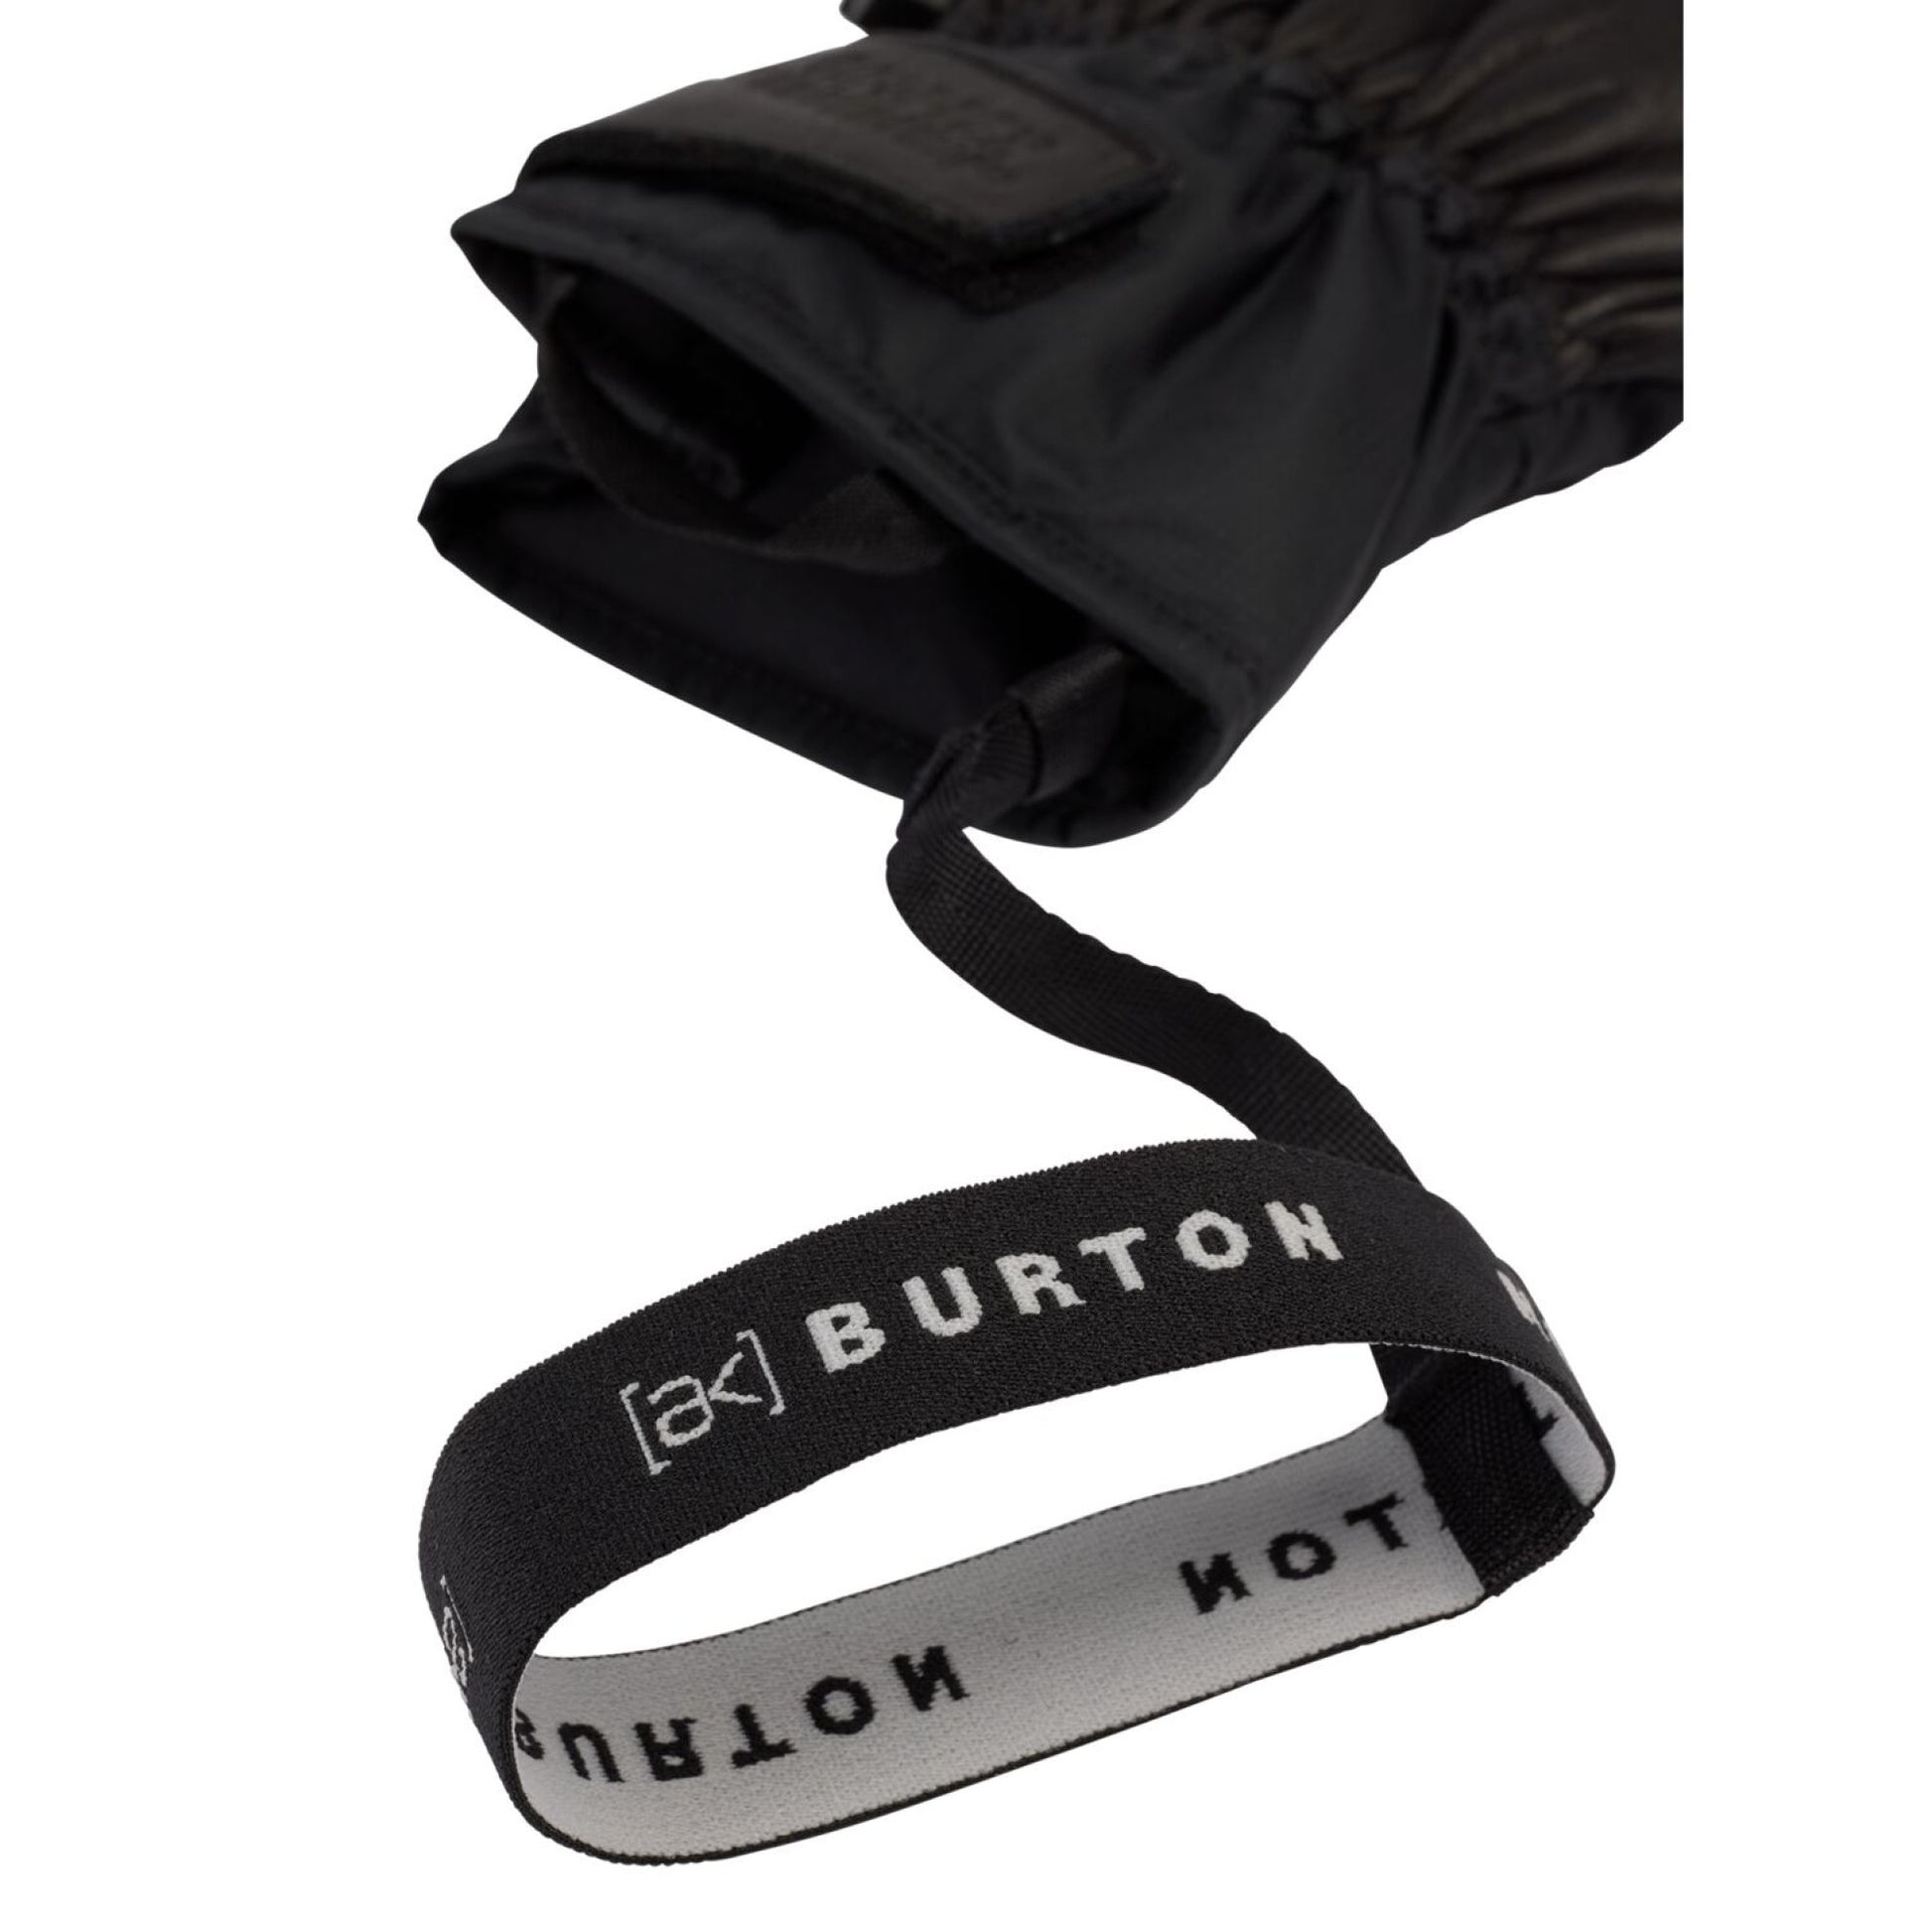 Burton [ak] Clutch GORE-TEX Leather Gloves True Black - Burton Snow Gloves